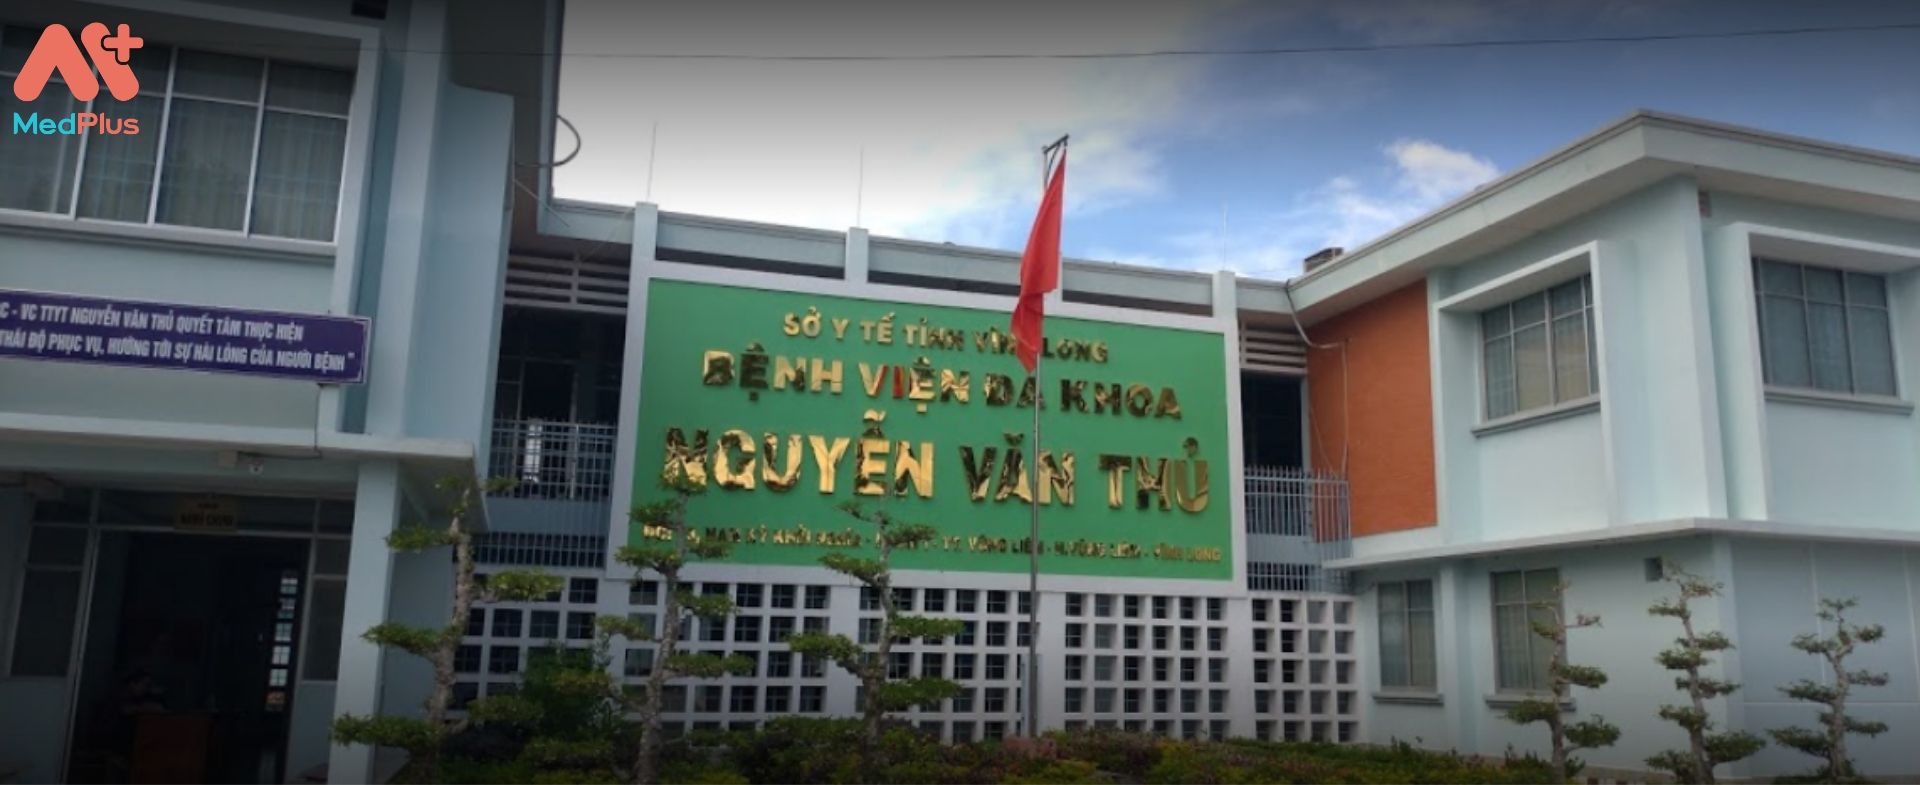 Trung tâm y tế Nguyễn Văn Thủ